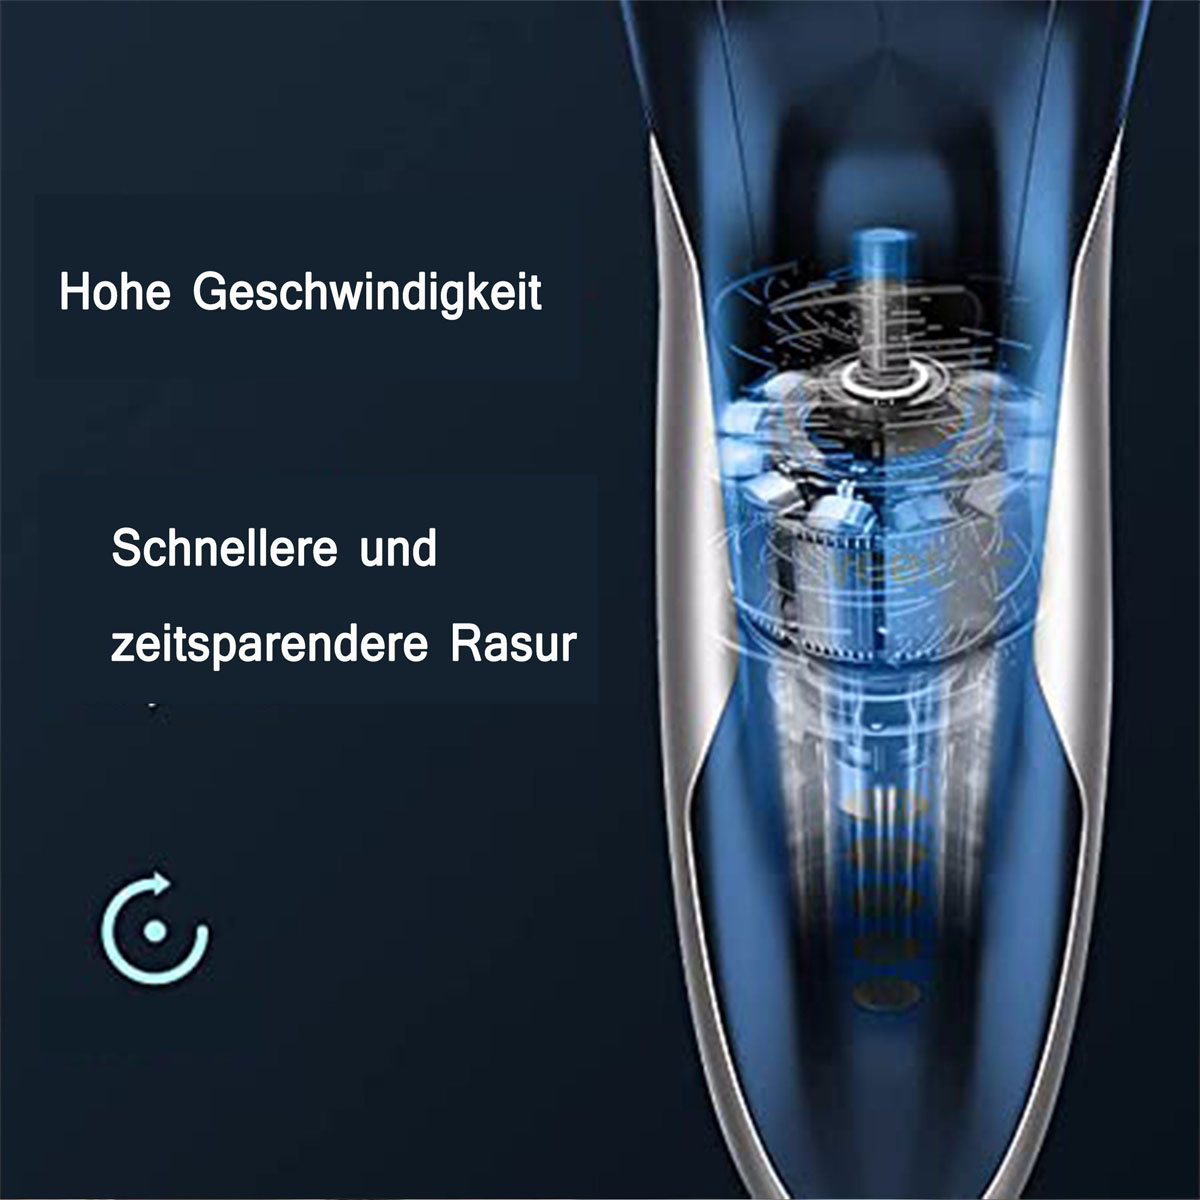 SCHEIFFY Electric Schwarz und Nass Rasierer Float 3D shavers, trocken,LED, Smart